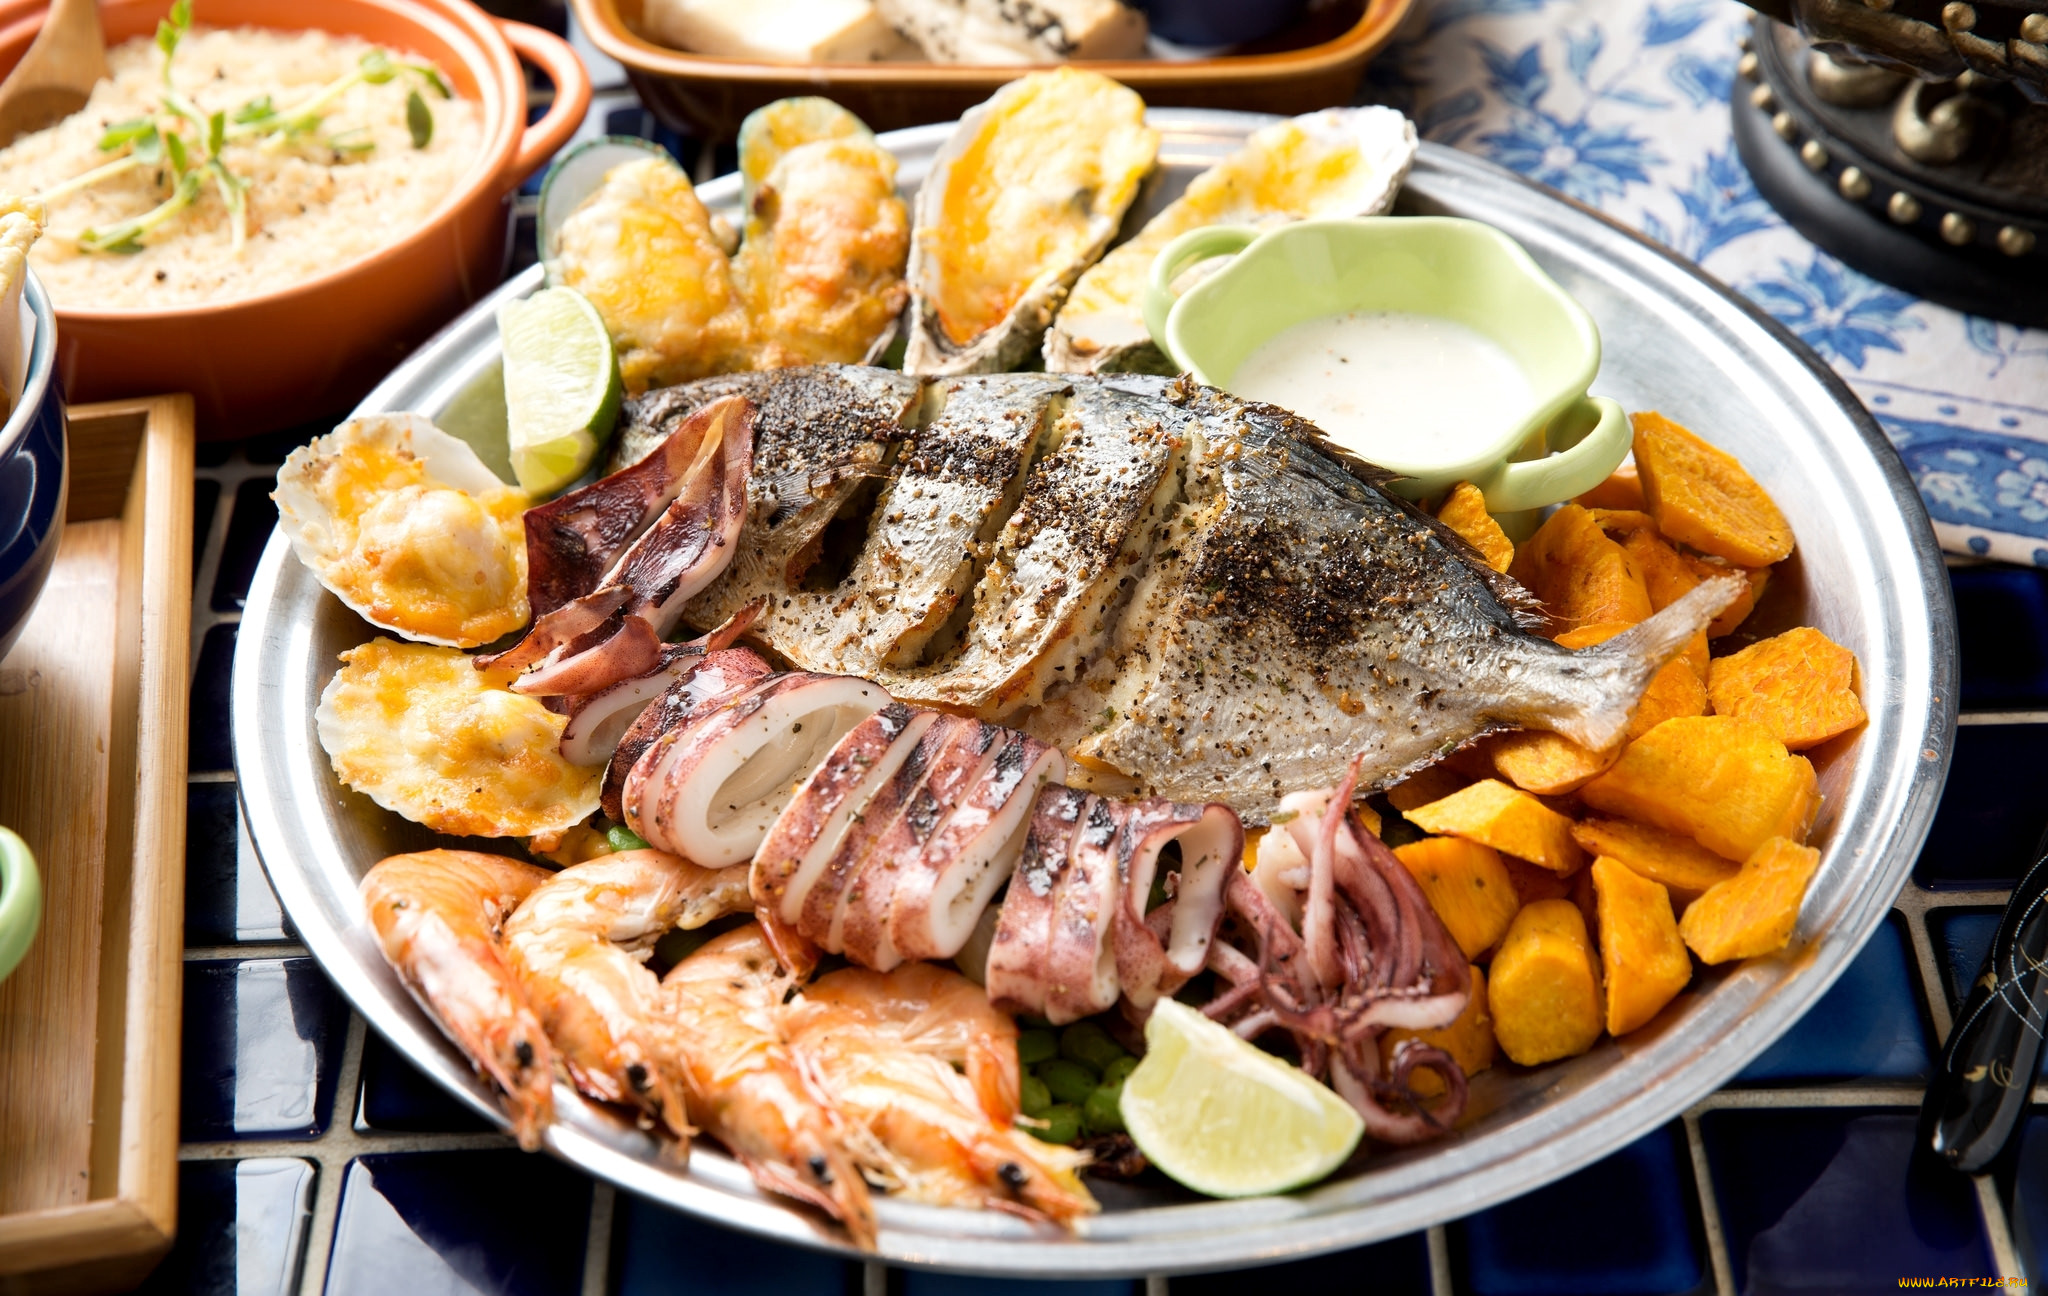 Национальная кухня. Блюда. Морепродукты. Блюда с морепродуктами. Рыба и рыбные блюда.